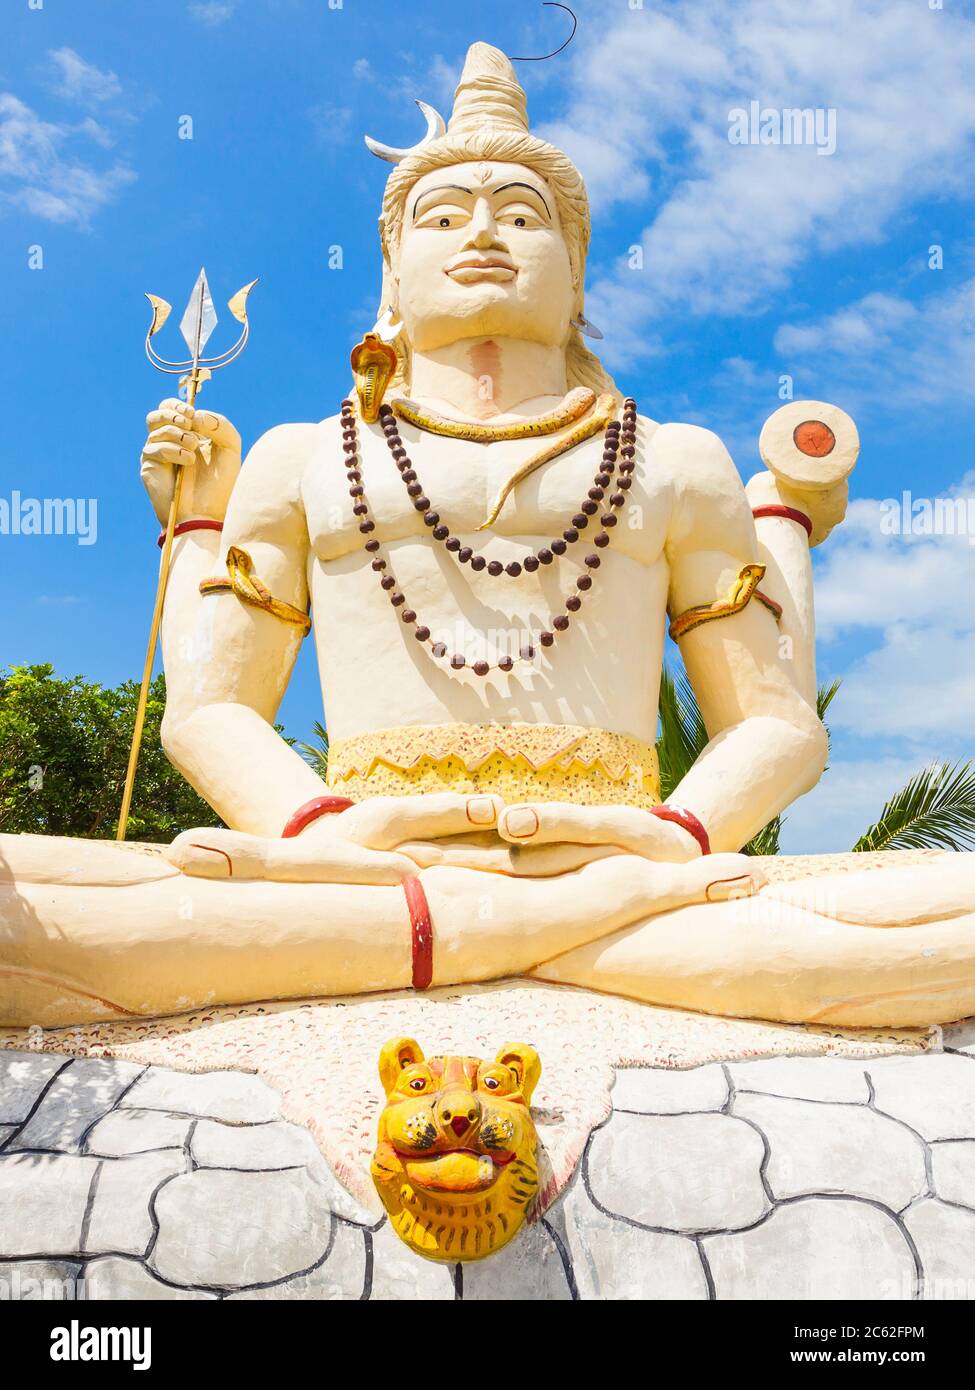 Sampunaatheecharam Shiva Tempel ist ein Hindu Tempel in der Nähe von Jaffna, Sri Lanka Stockfoto